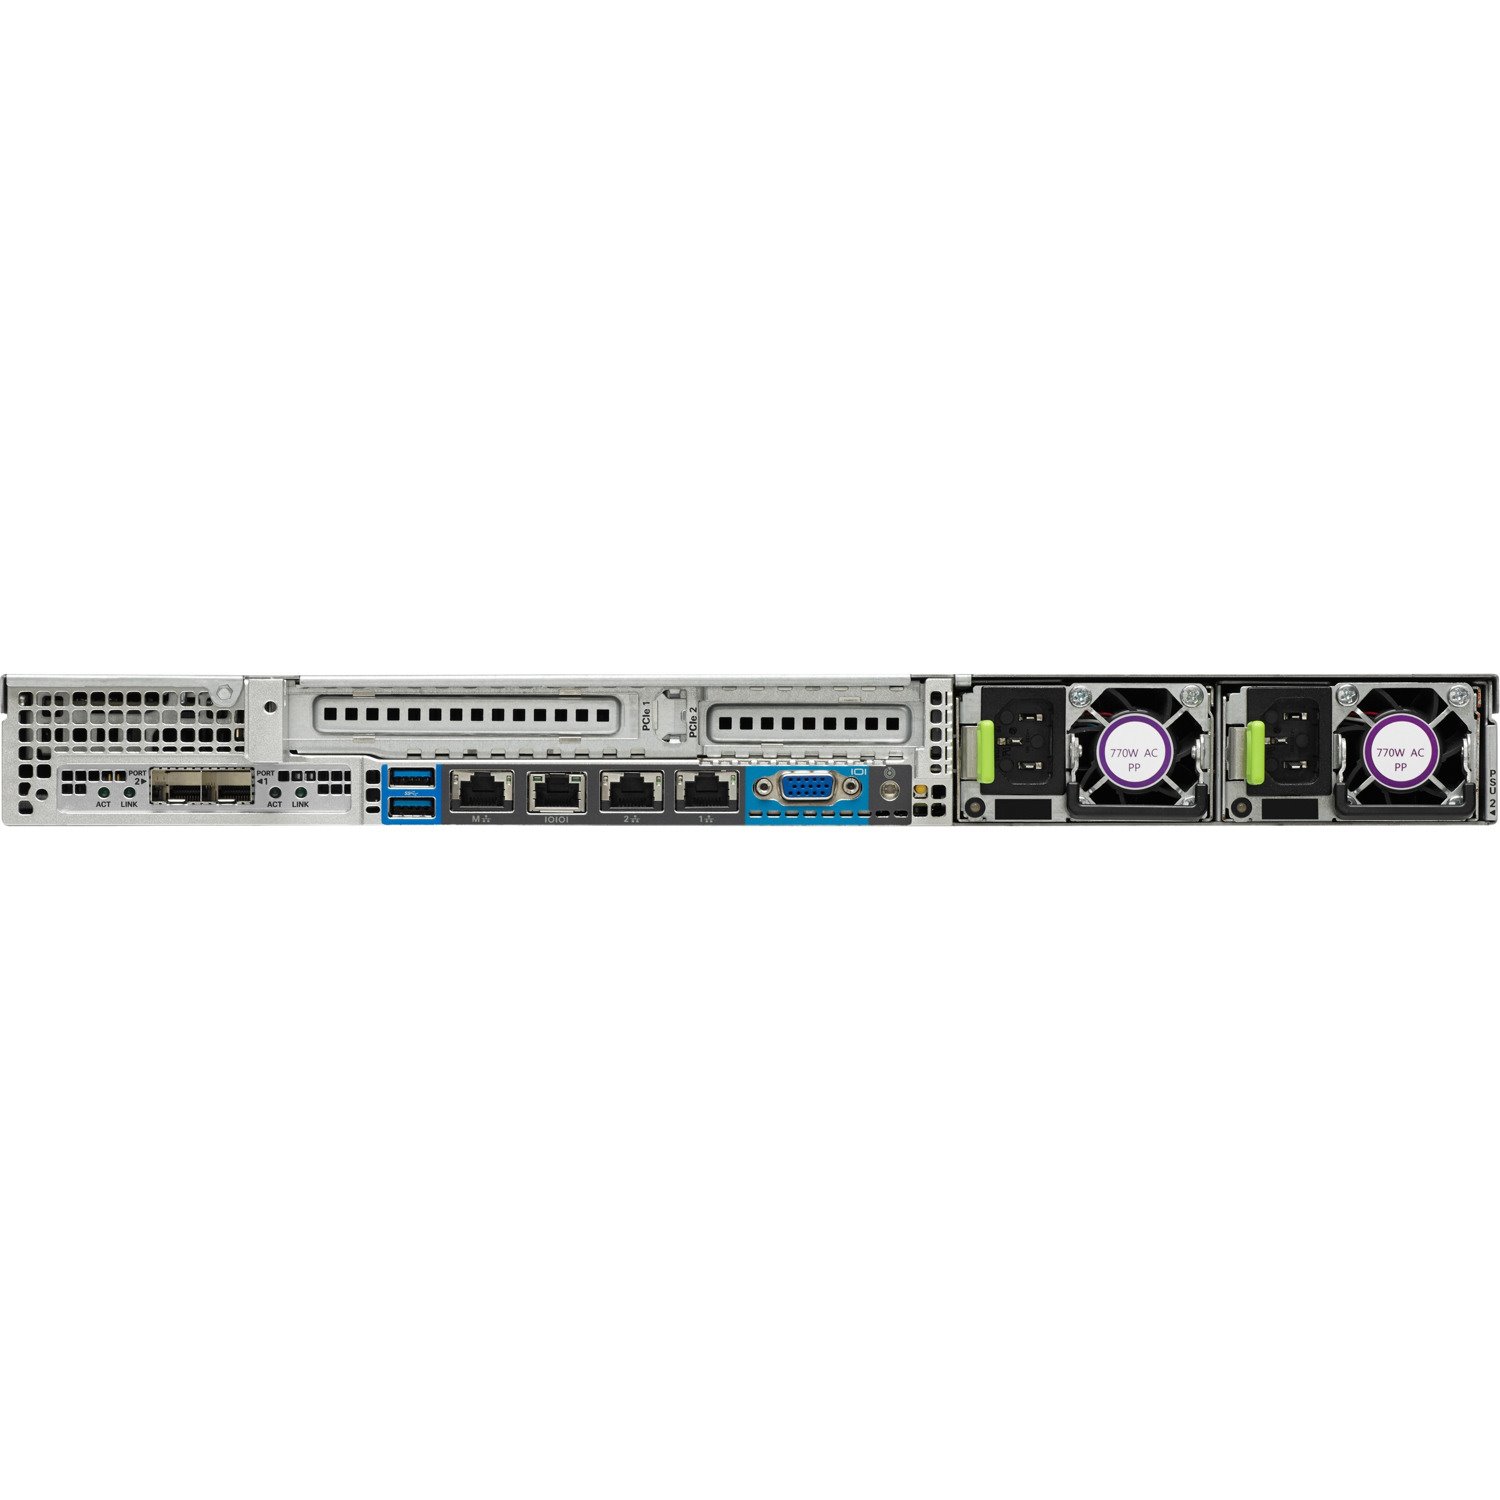 Cisco C220 M4 1U Rack Server - 2 x Intel Xeon E5-2630 v4 2.20 GHz - 64 GB RAM - Serial ATA/600 Controller